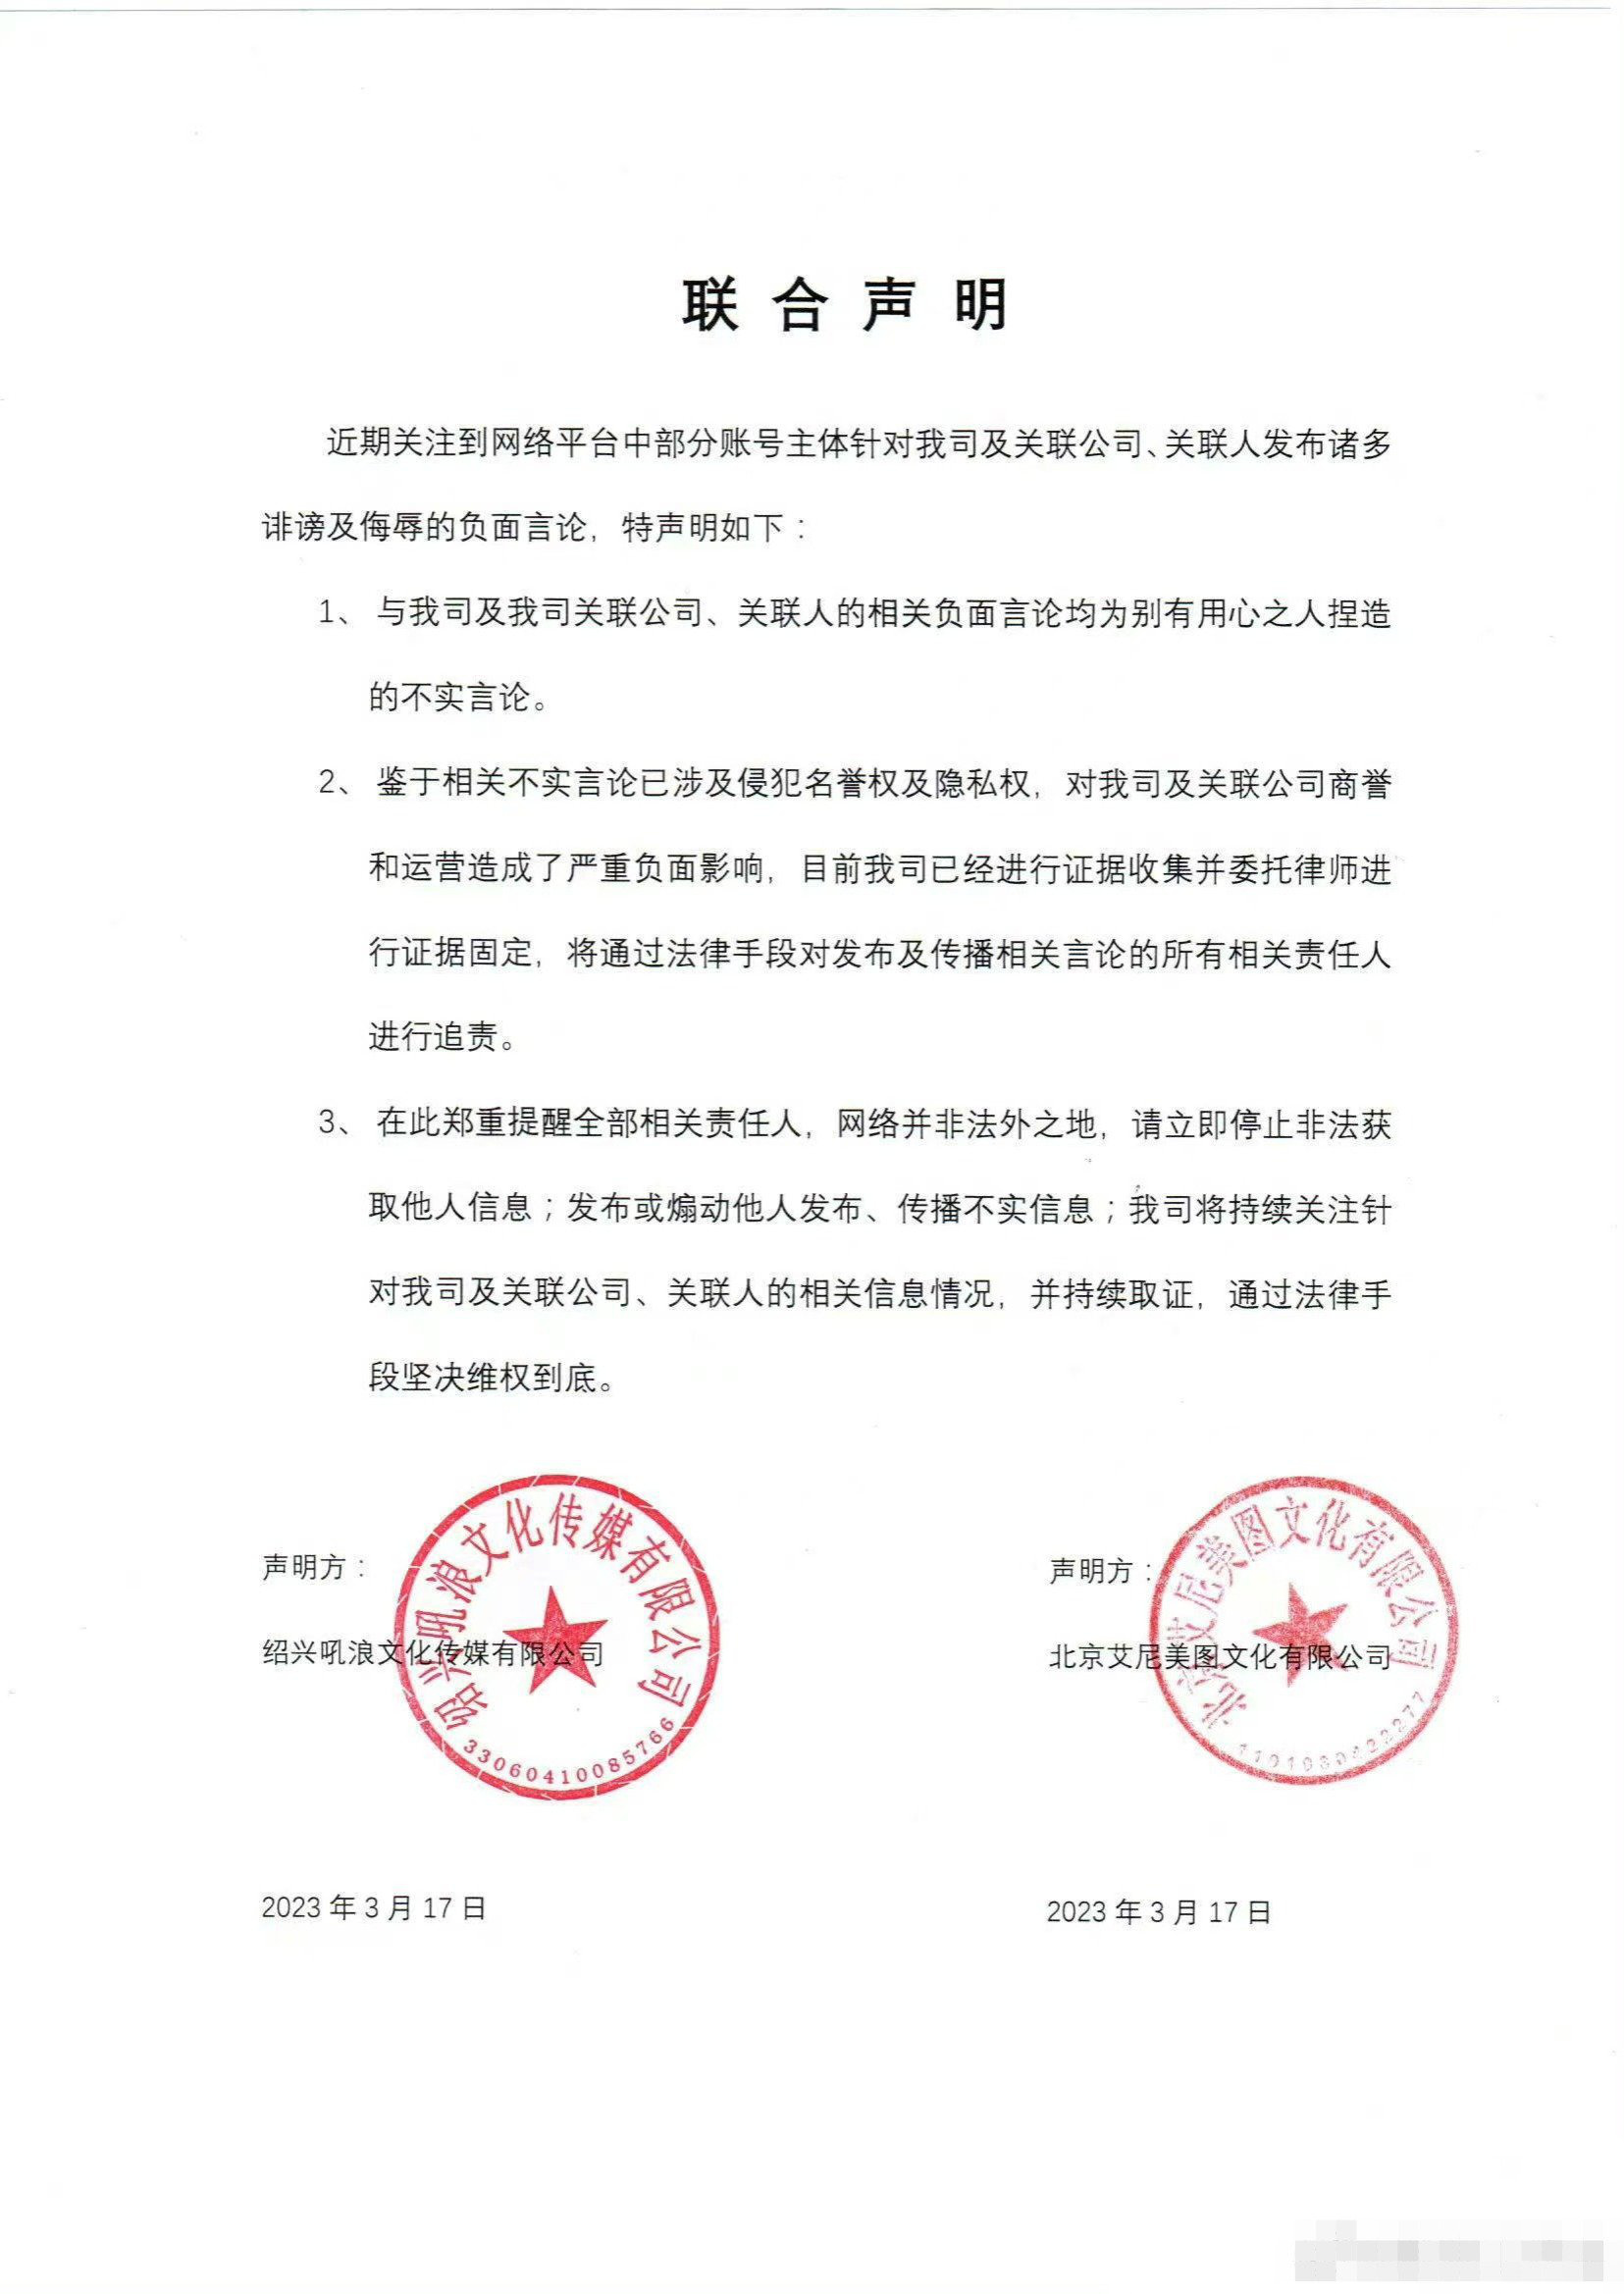 姜广涛涉嫌刑事犯罪 吼浪工作室发声明称已报案